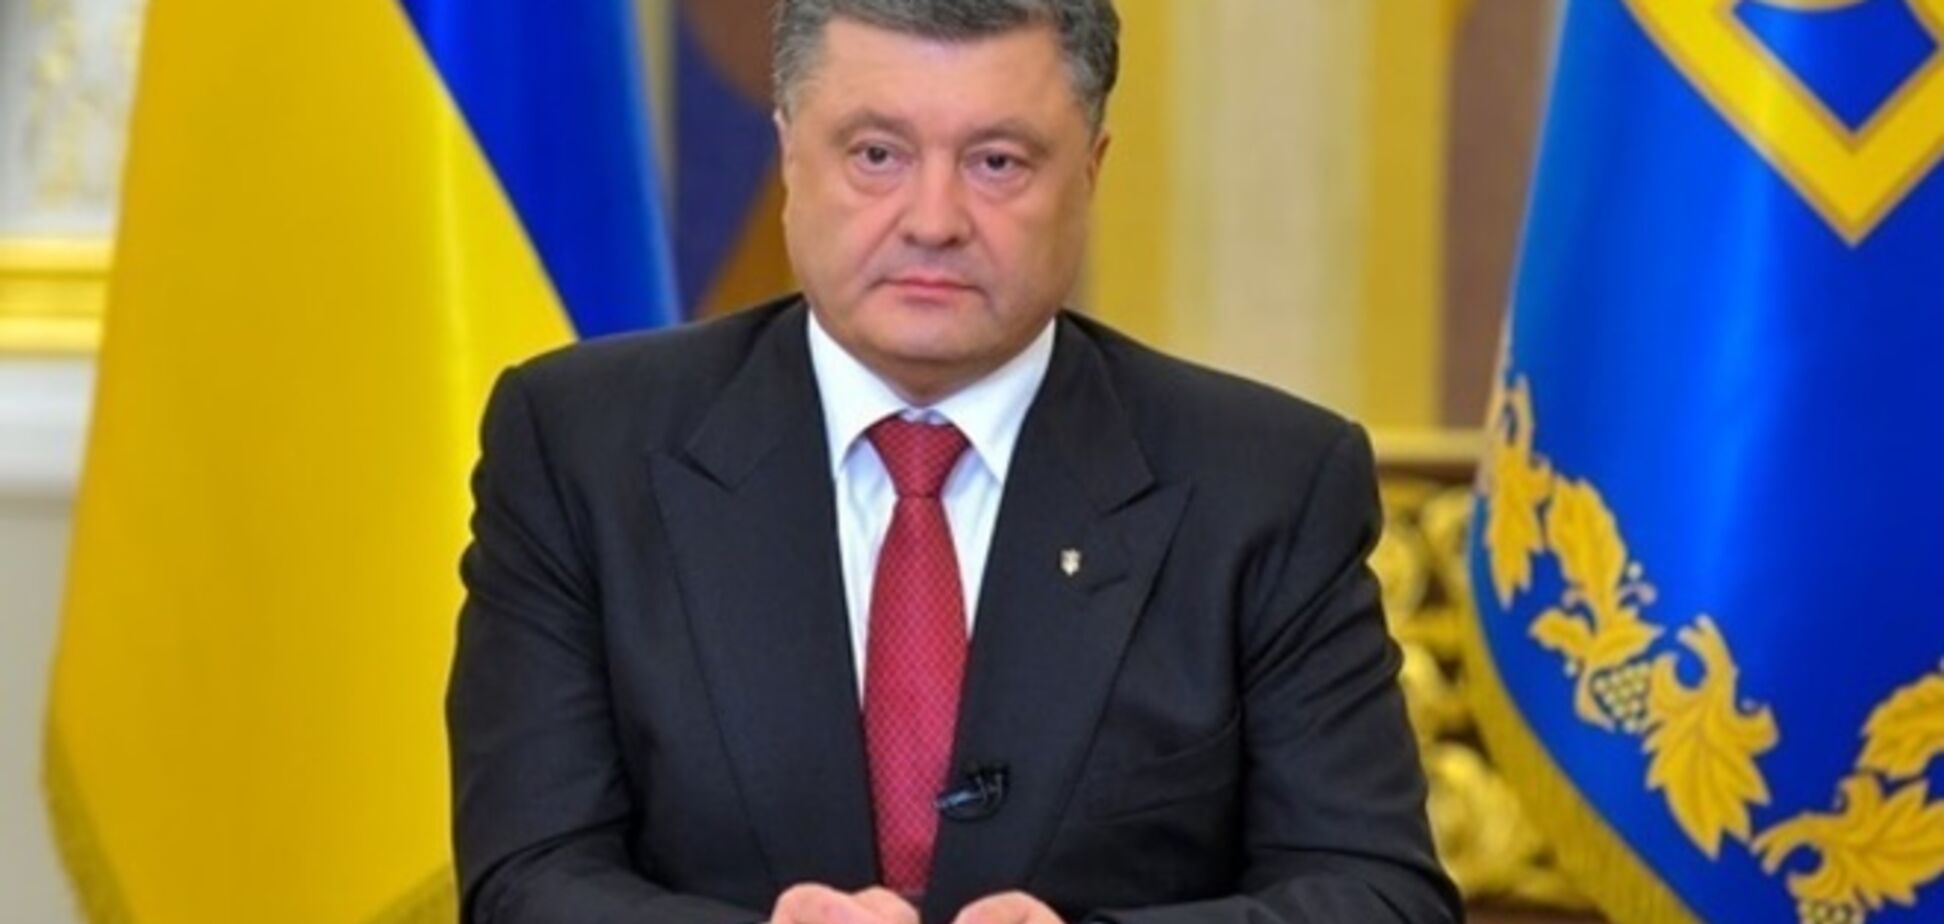 Порошенко подписал закон об особом порядке управления для части Донбасса